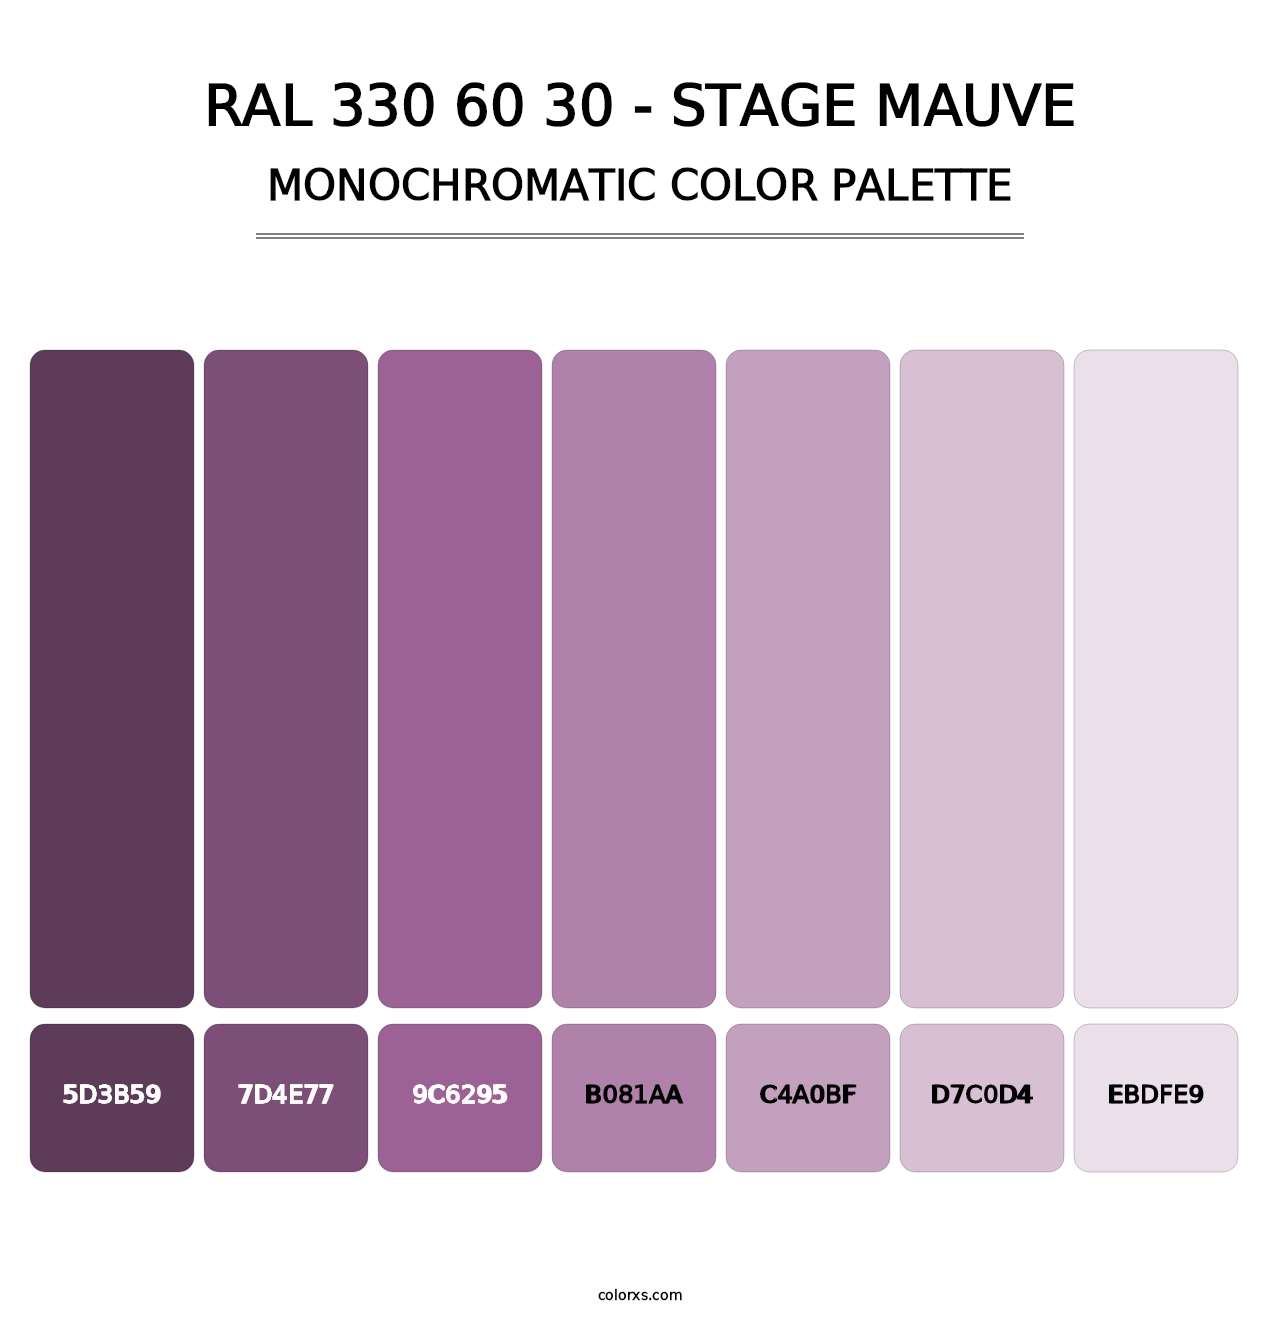 RAL 330 60 30 - Stage Mauve - Monochromatic Color Palette